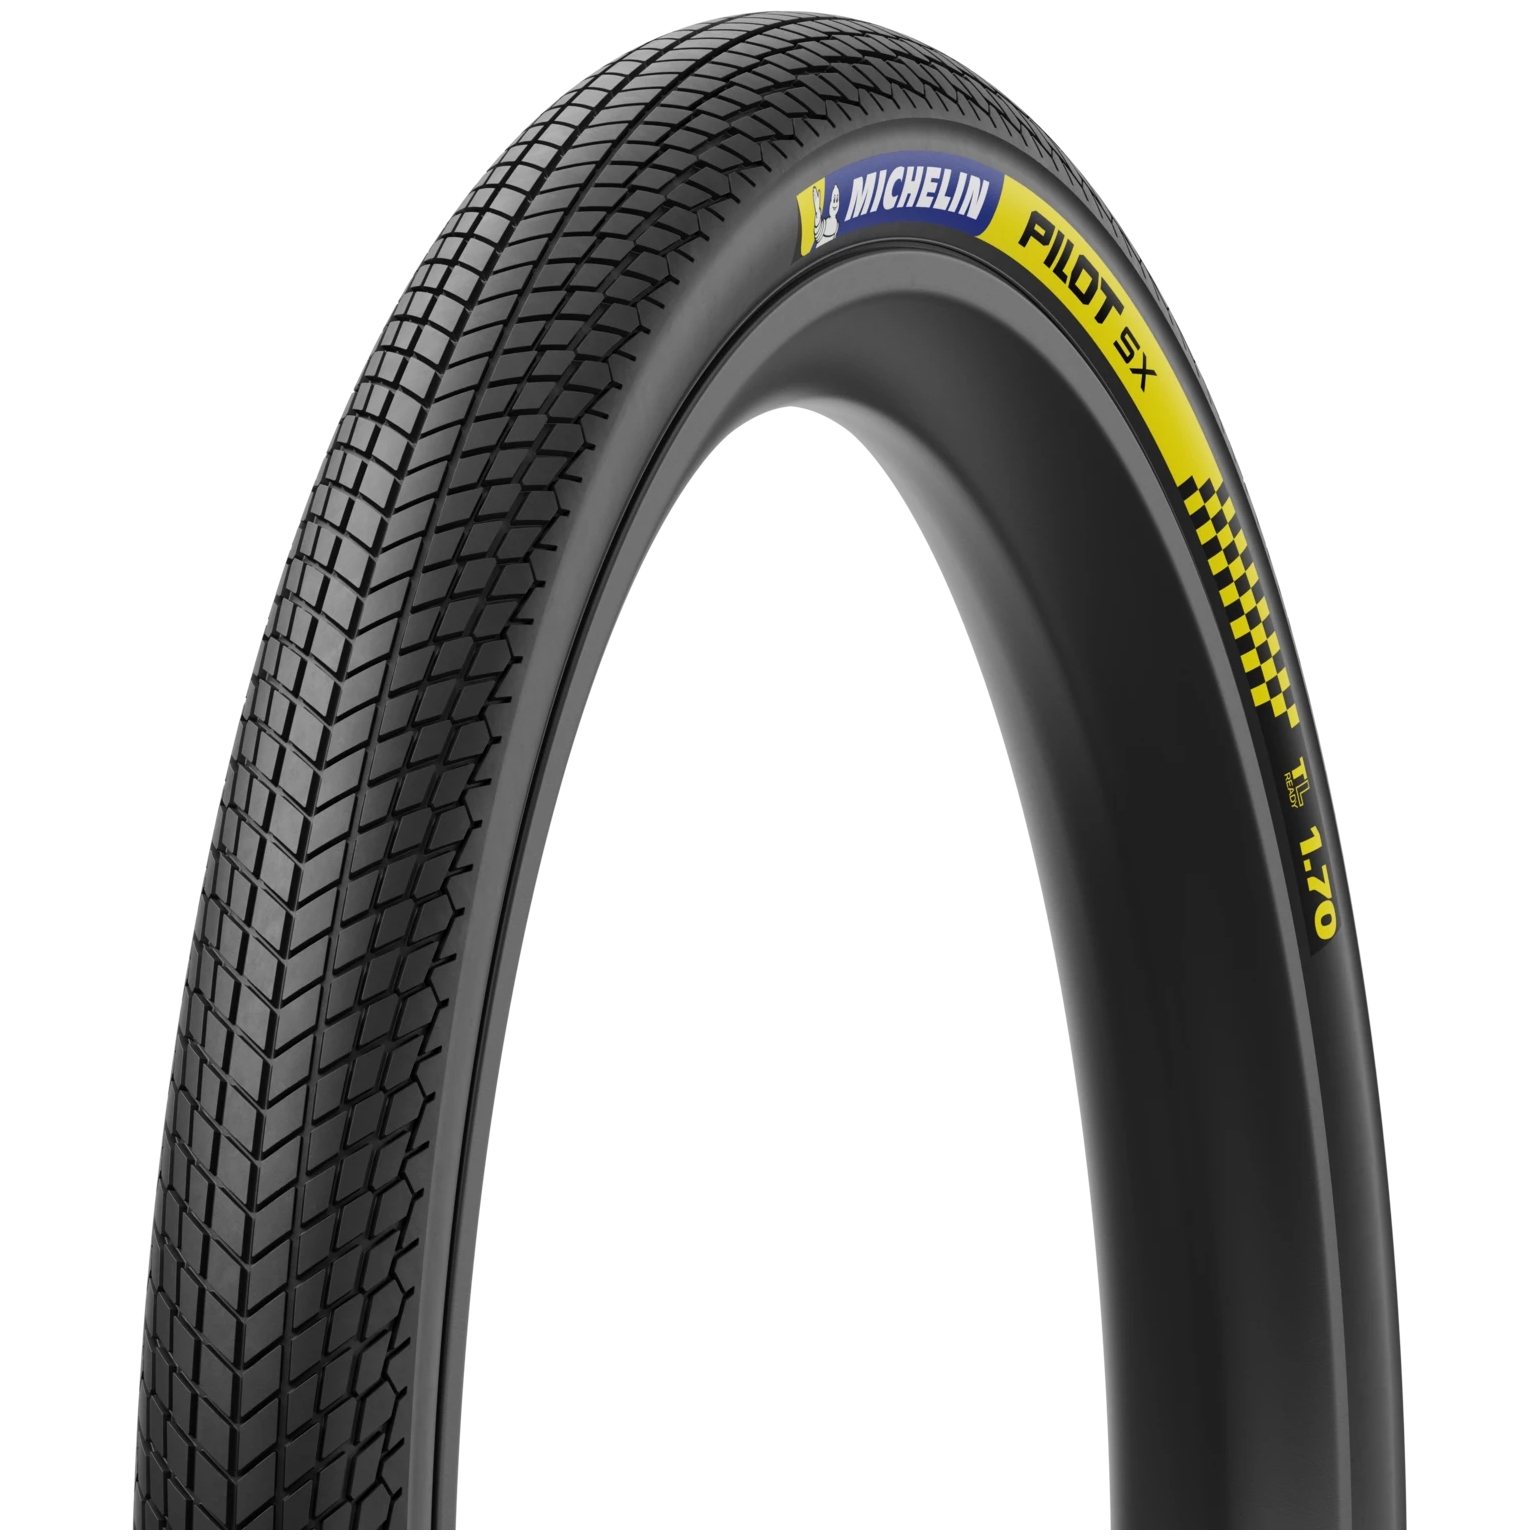 Productfoto van Michelin Pilot SX Draadband - Racing Line - 37-451